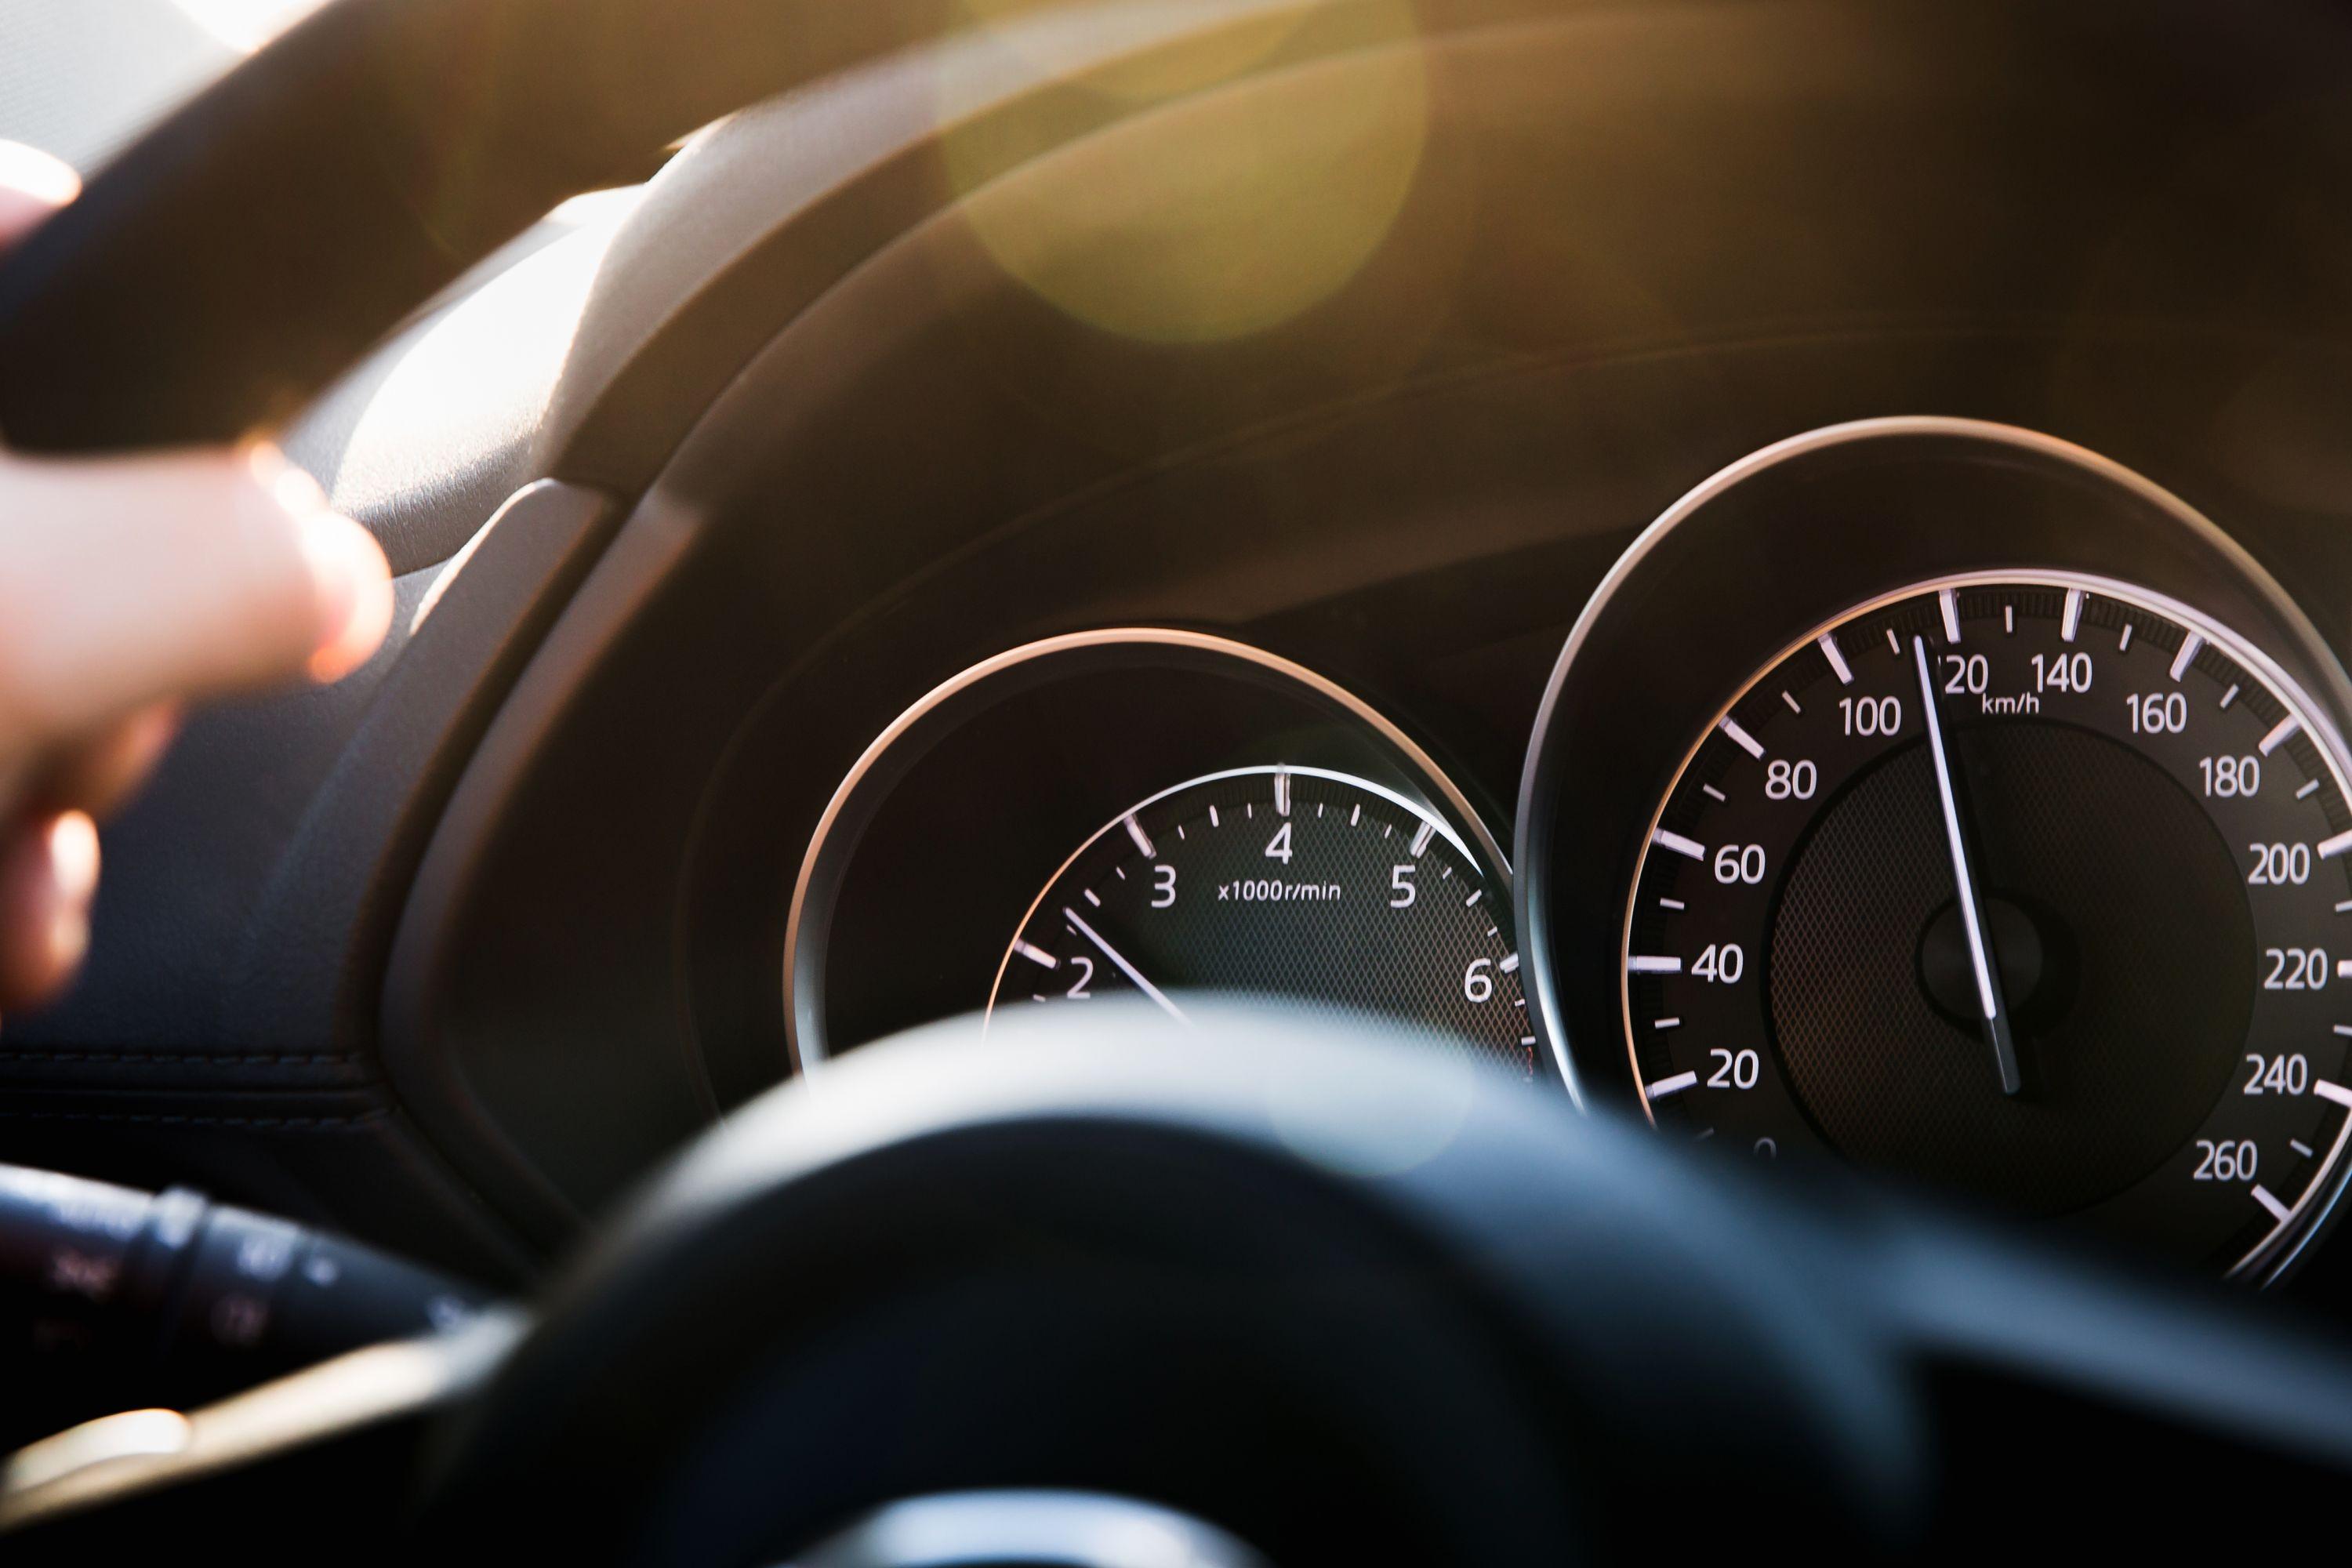 Şoferii pot circula cu viteză mărită pe drumurile expres din România. Parlamentul a adoptat legea care stabileşte noile limite maxime